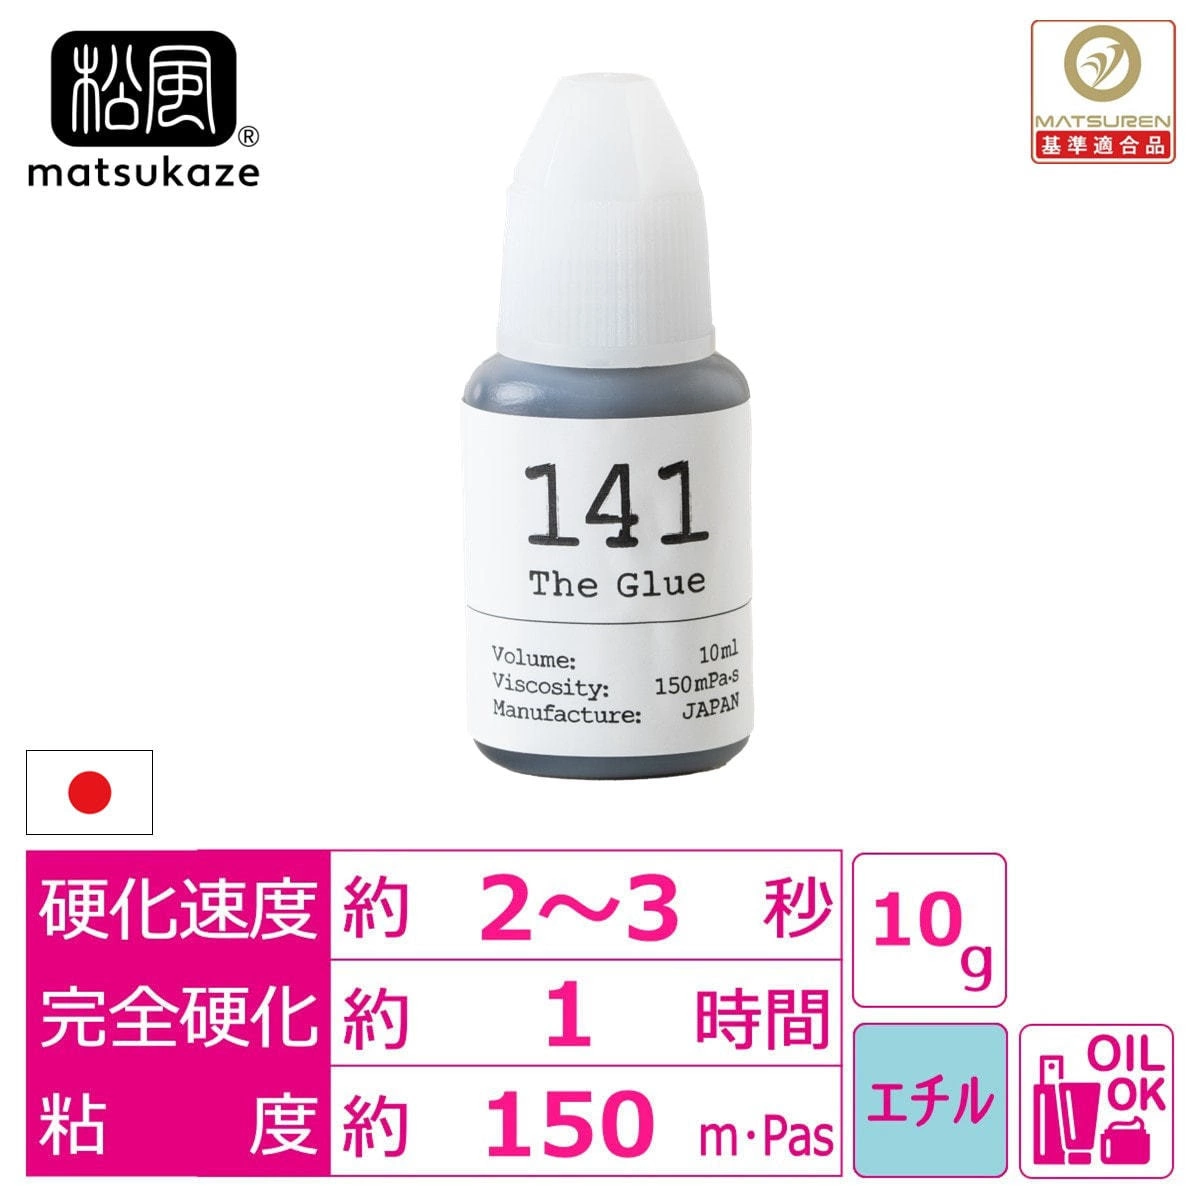 【松風】The Glue 141 10ml